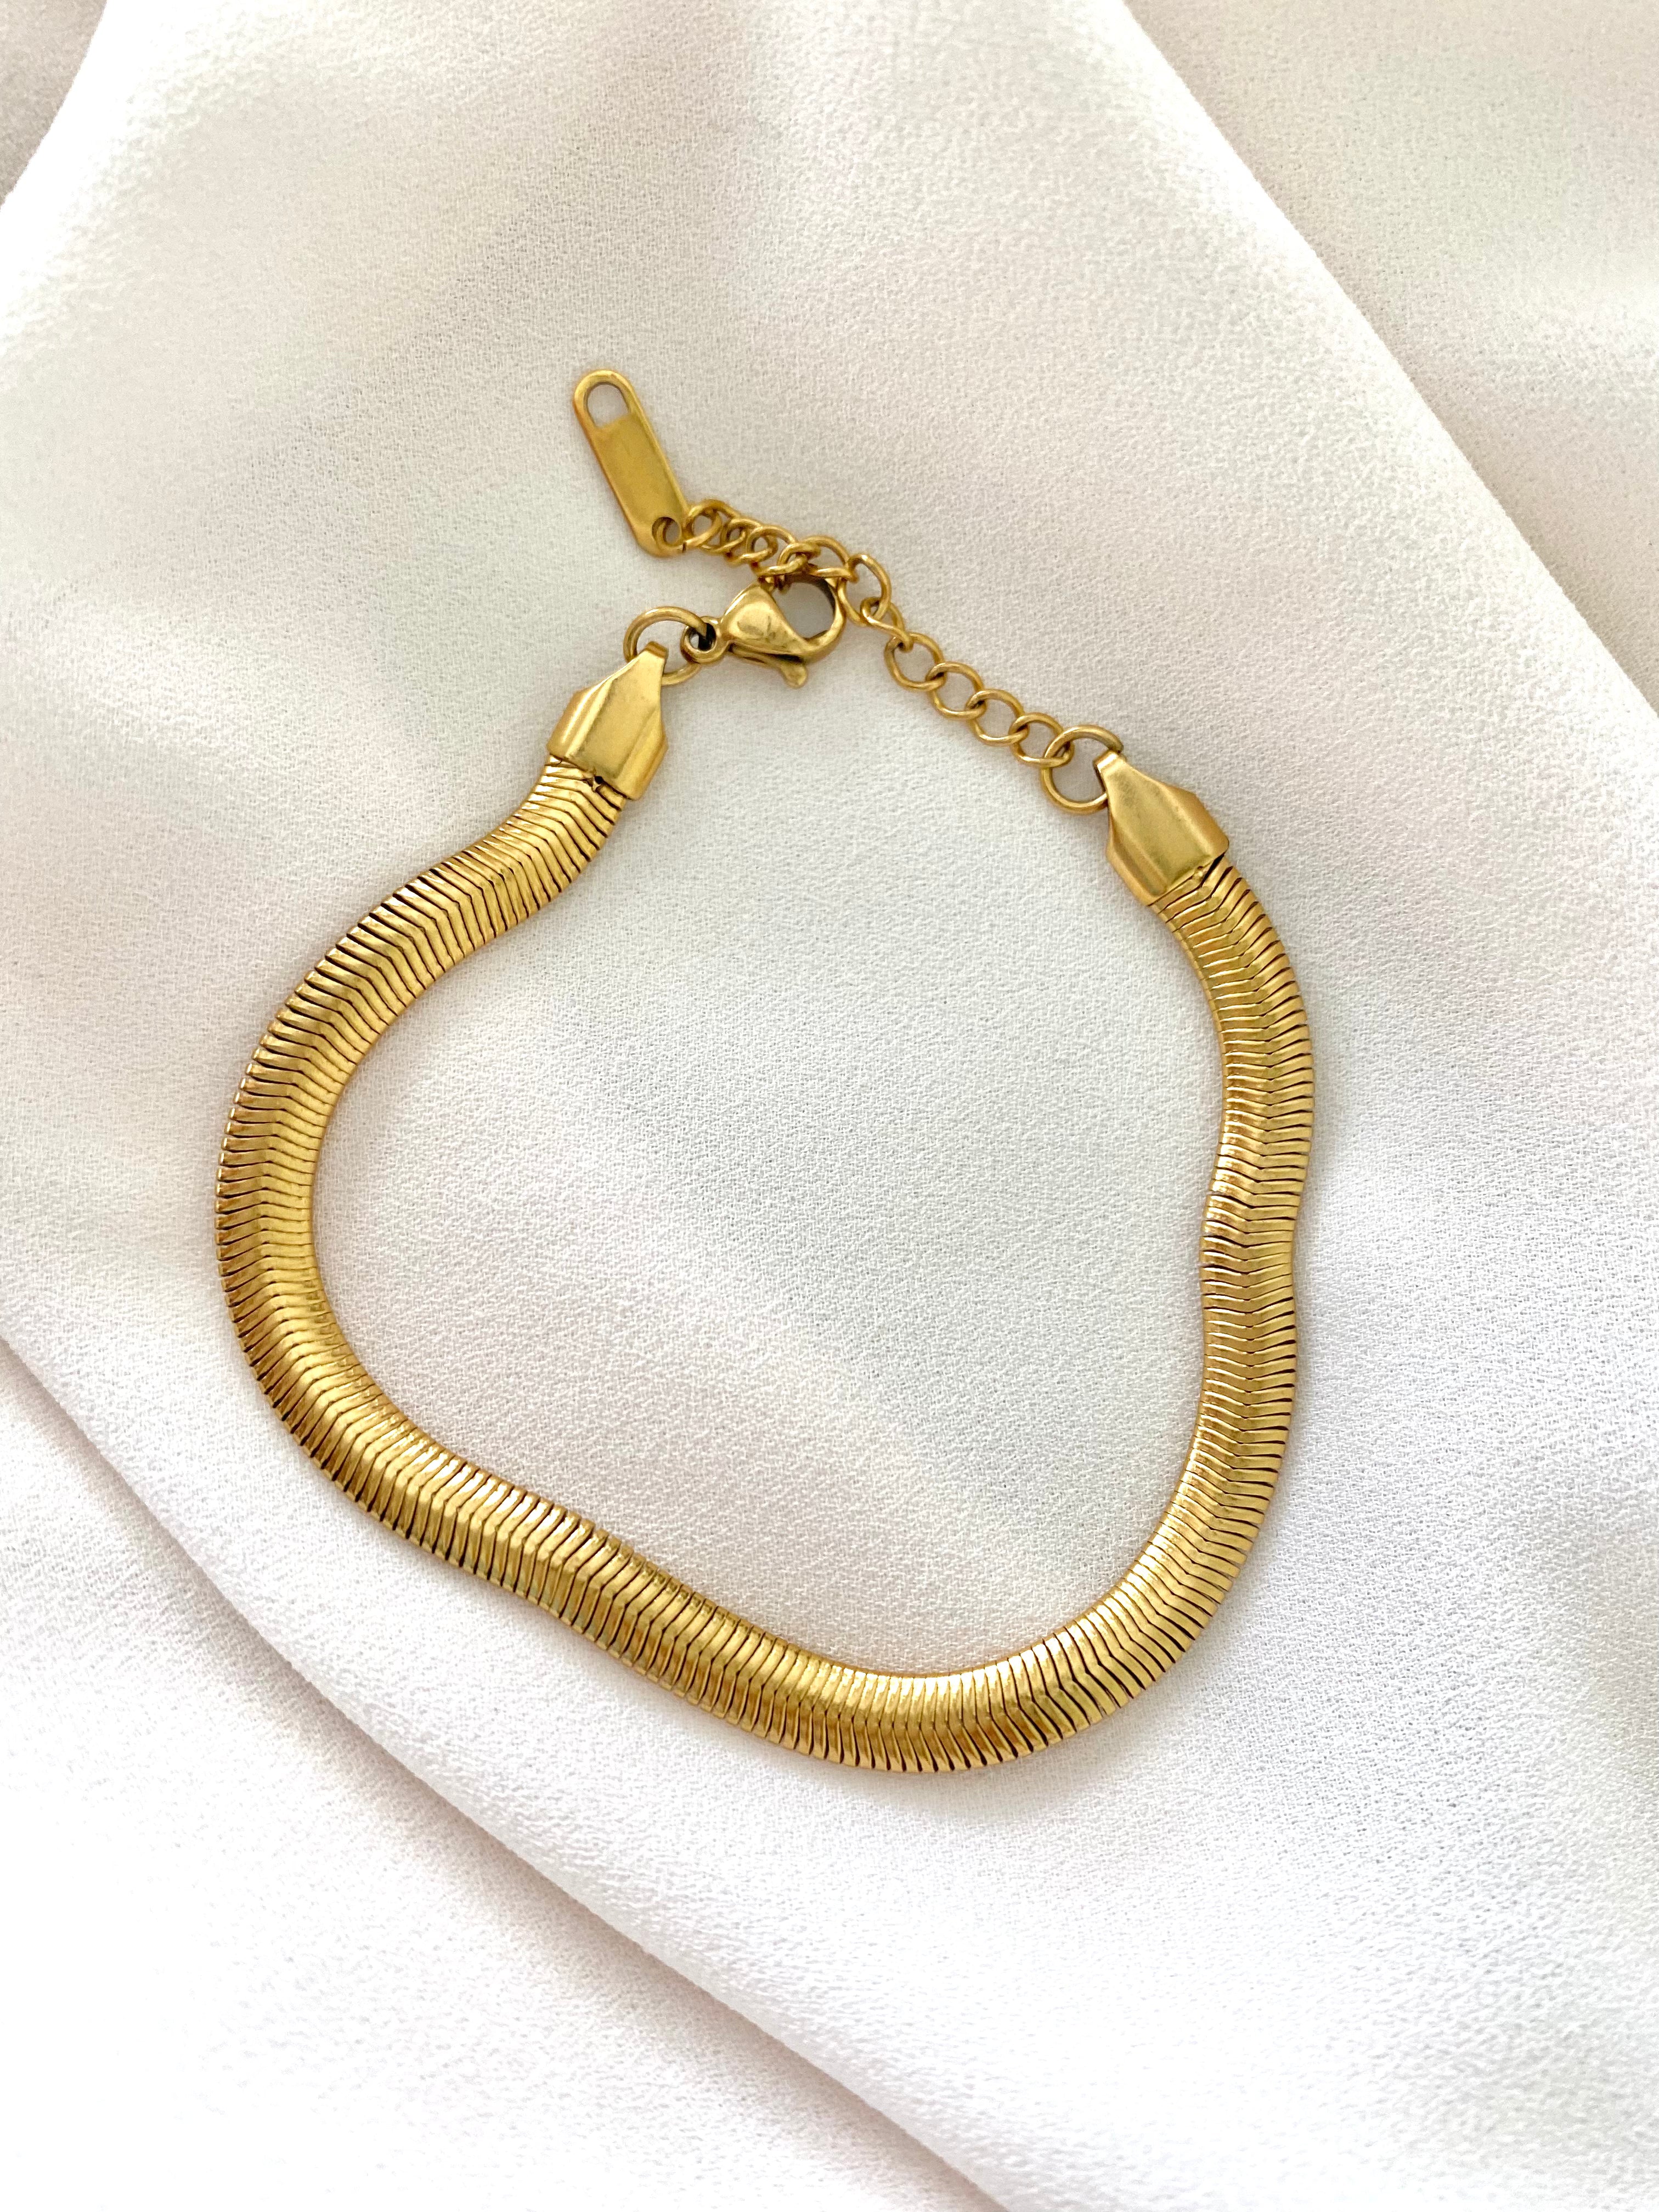 Gold Filled Snake Herringbone Bracelet - Vintage Style - Thick Herringbone Chain Bracelet Gift - 5mm